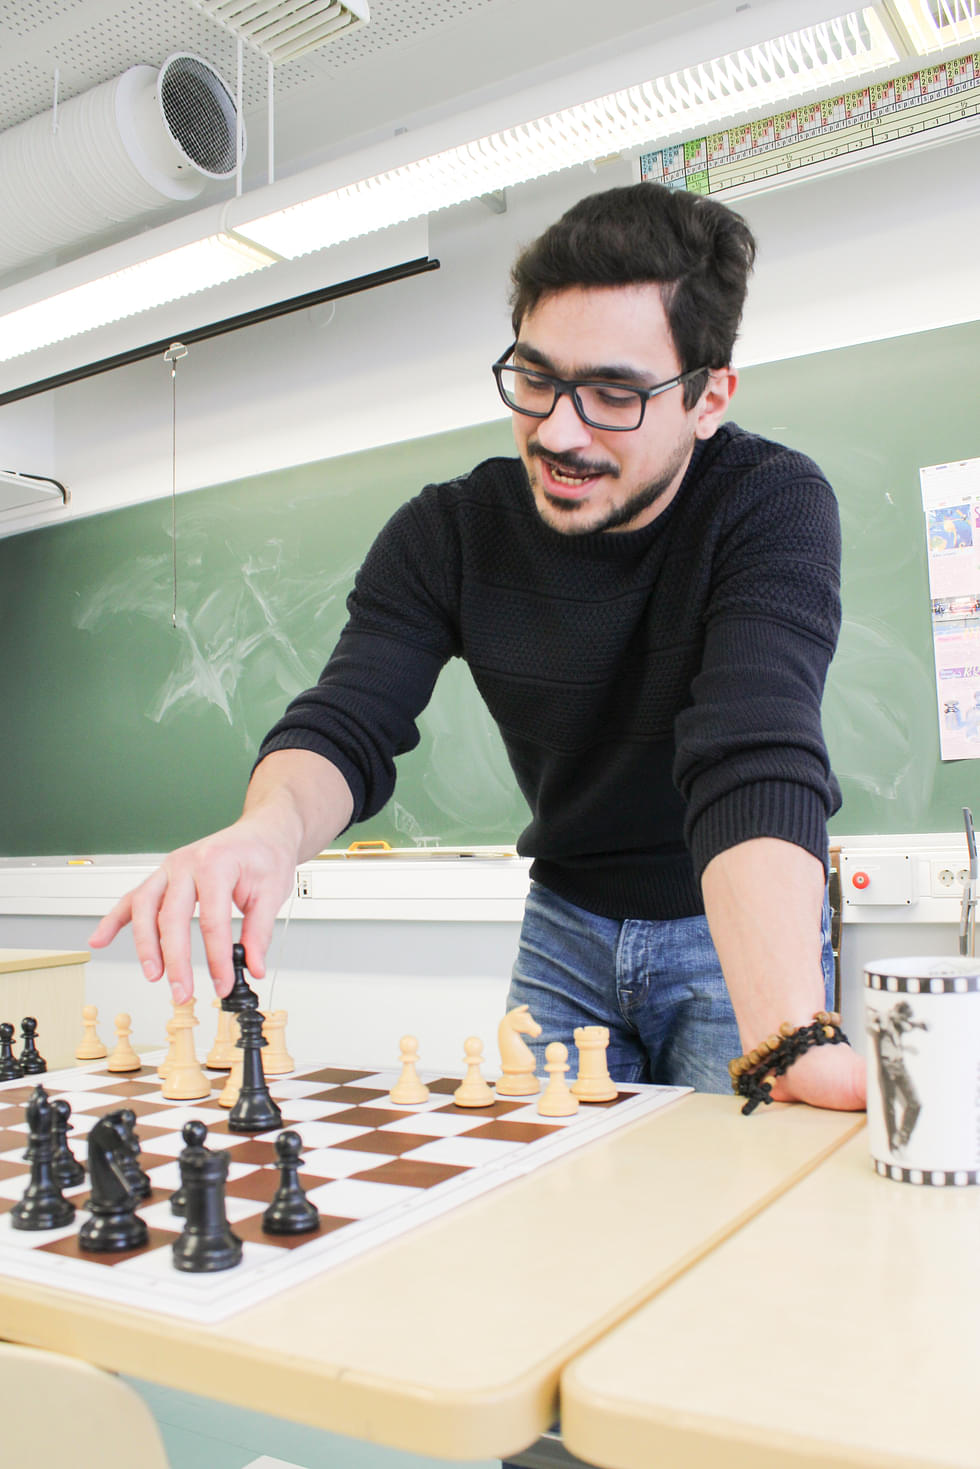 Matemaattinen ajattelu kuuluu myös shakkiin, Nicholas Grigoriadiksen yhteen rakkaaseen harrastukseen. Hän käy viikoittain Joensuussa shakkikerhossa ja pitää myös Valtimolla oppilaille shakkikerhoa.